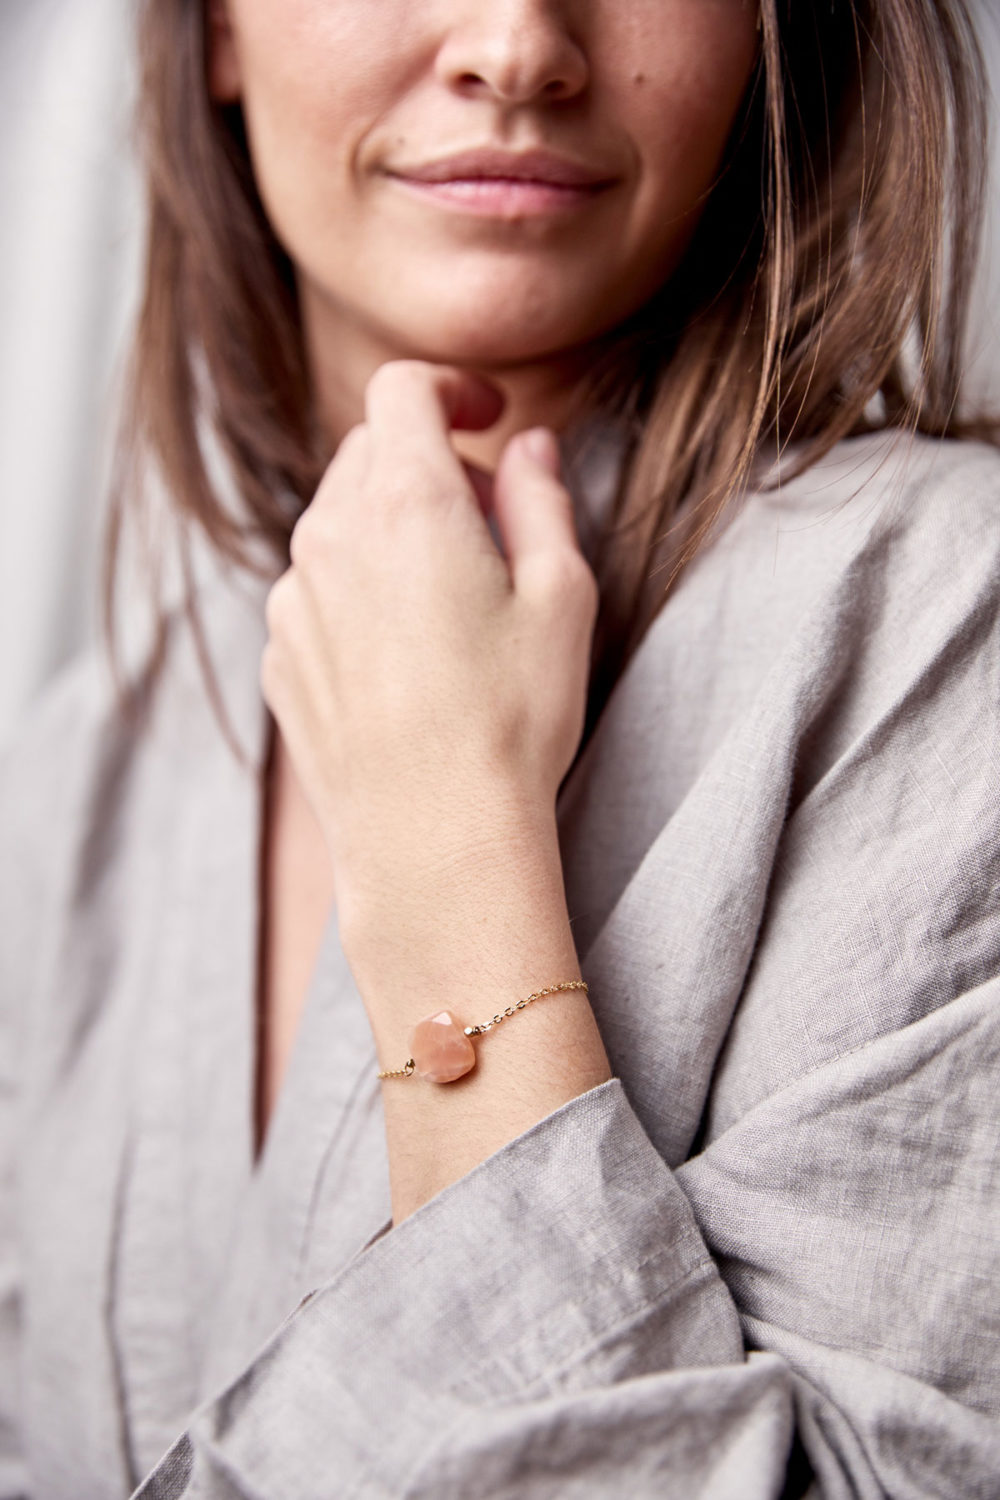 PAUKAA Armband gold mit Mondstein rosé und goldenem NAIONA Plättchen. Pose, Arm, Handgelenk, Bluse.